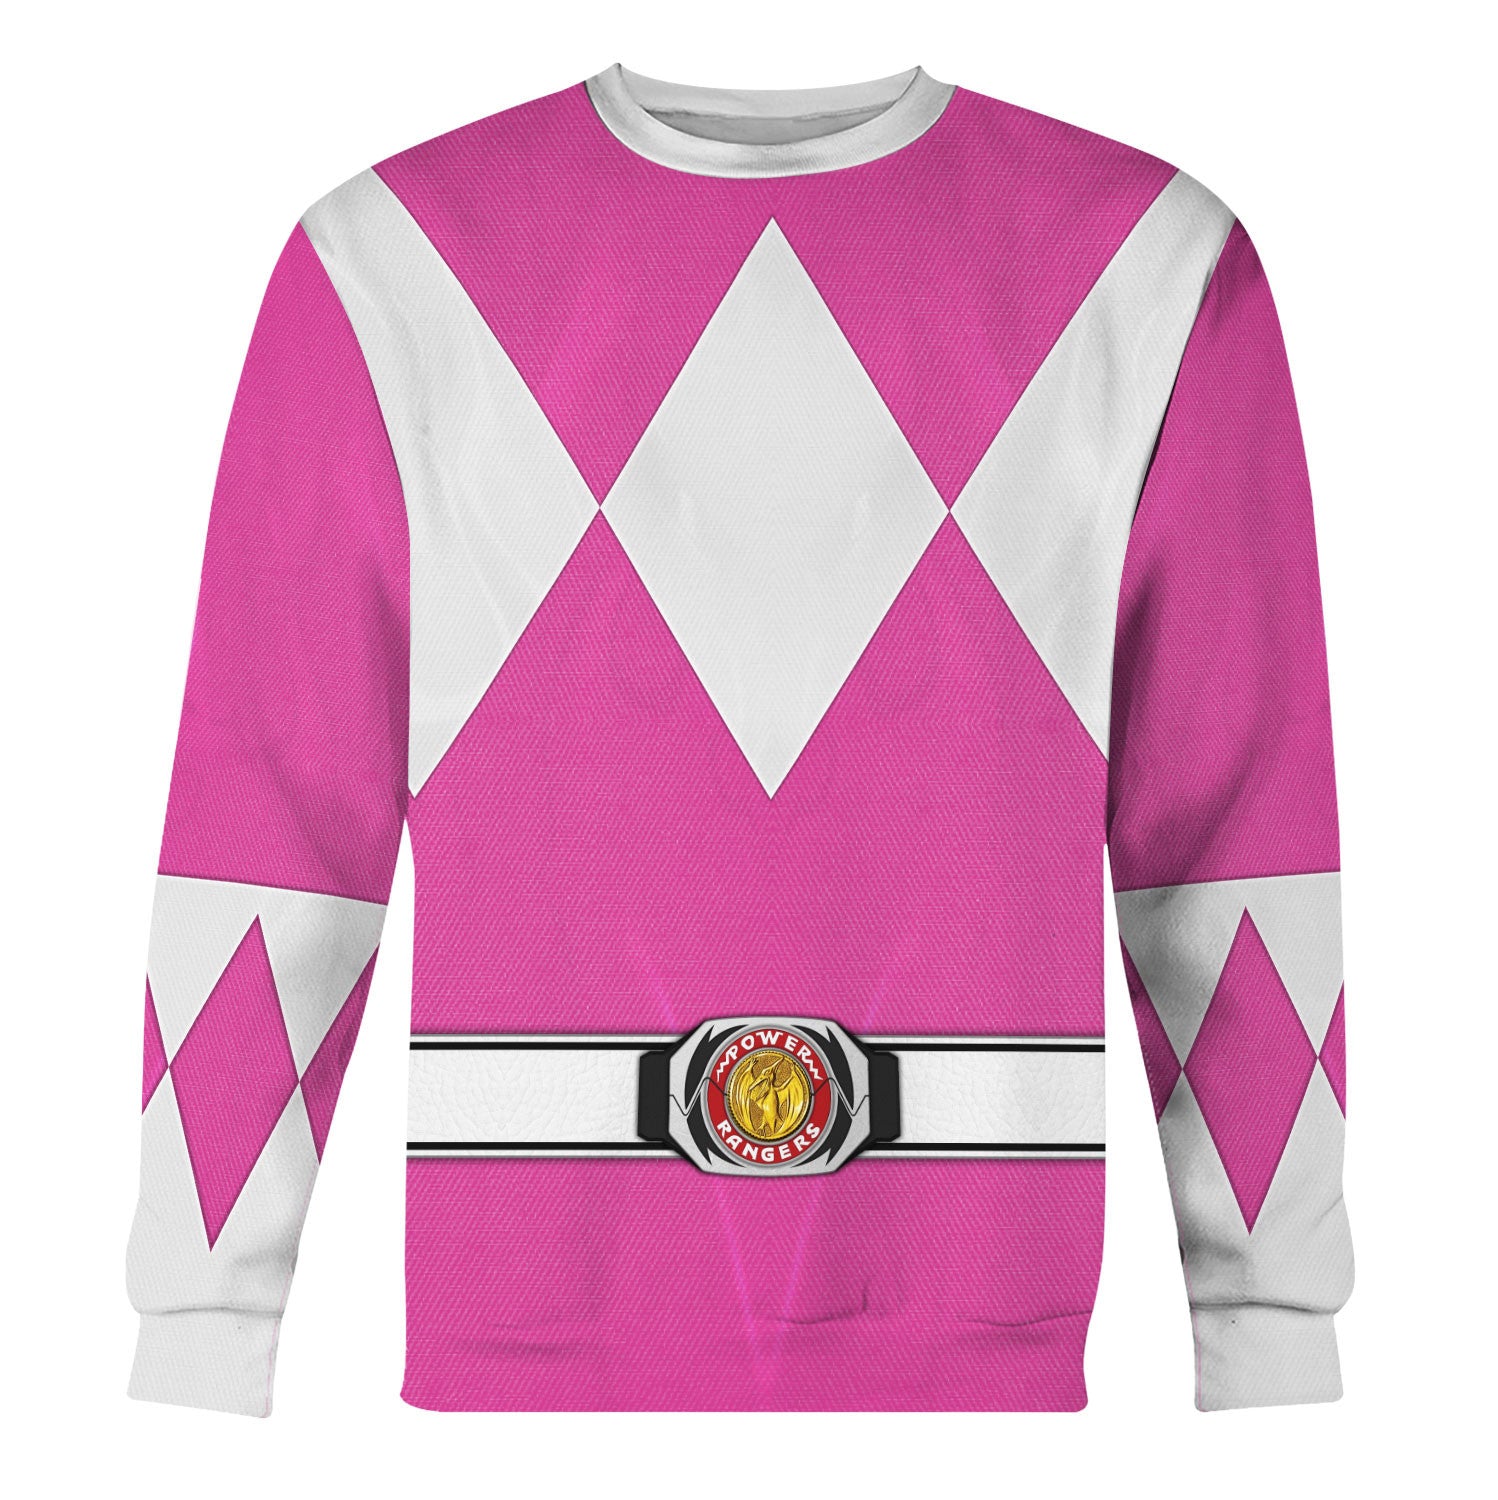 Pink Ranger Mighty Morphin sweatshirt